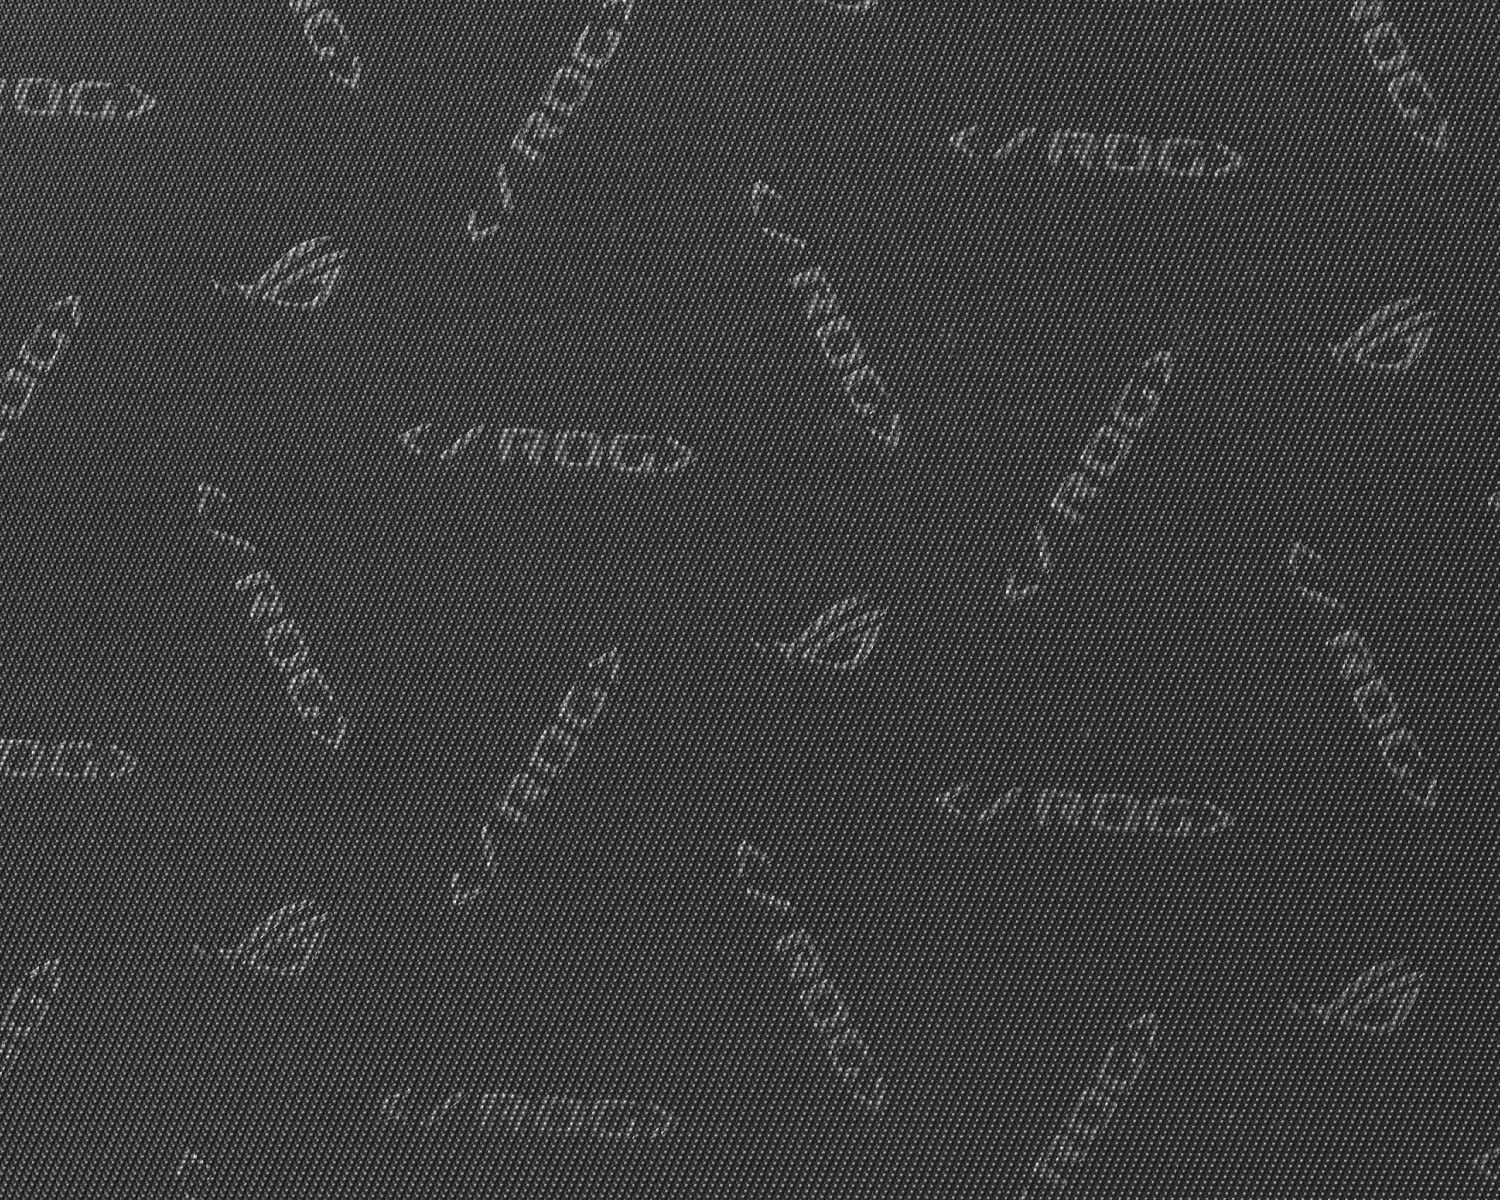 Extreme close-up of the ROG logo and "</ROG>" stitching inside the ROG SLASH Hard Case Luggage